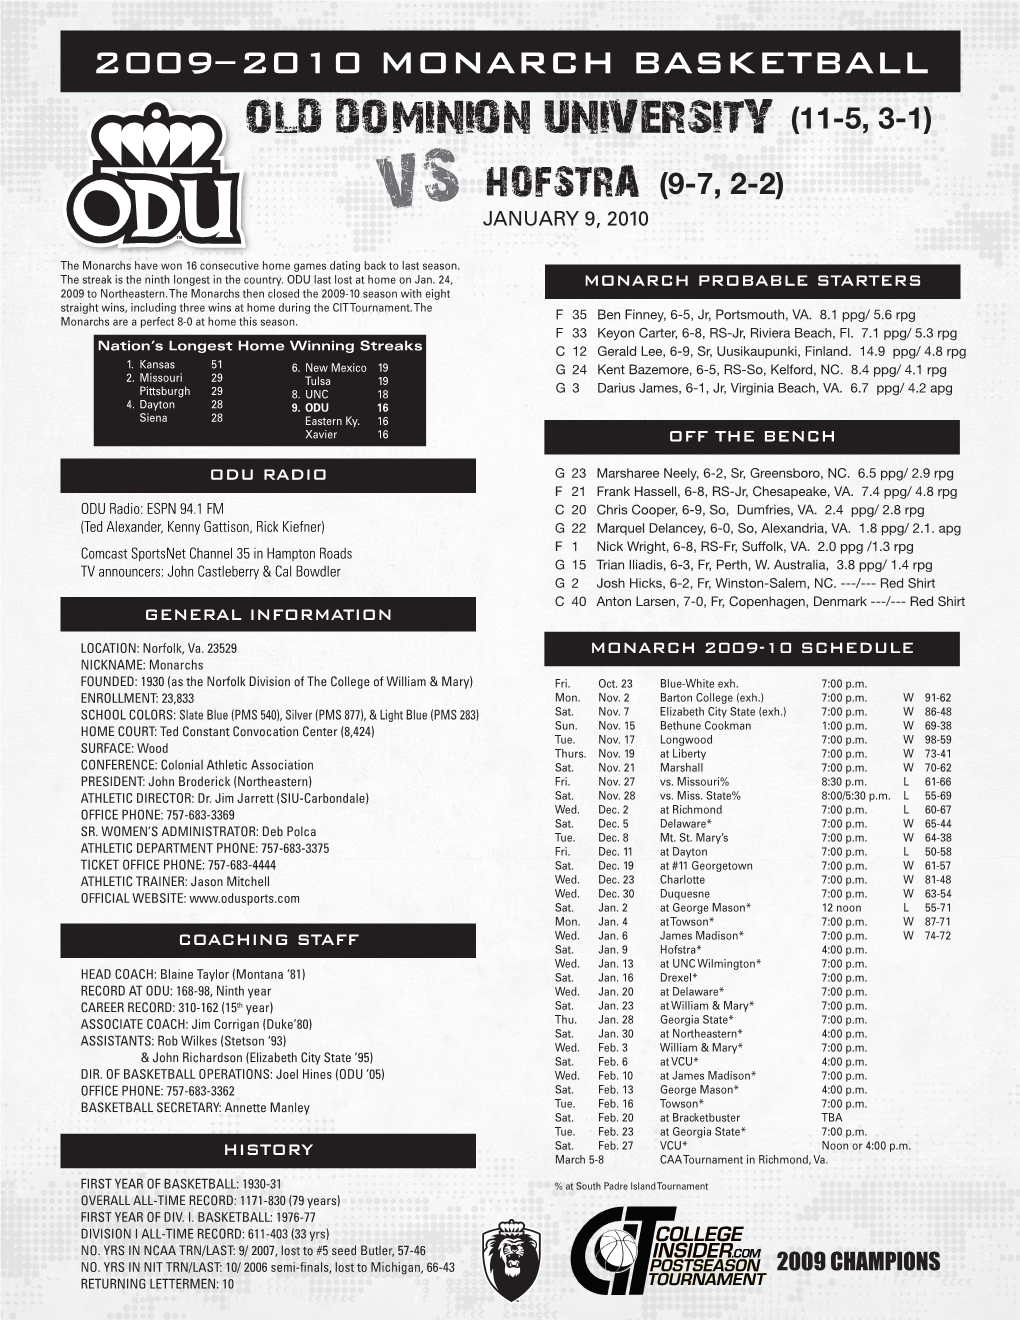 Old Dominion University (11-5, 3-1) Vs Hofstra (9-7, 2-2) JANUARY 9, 2010